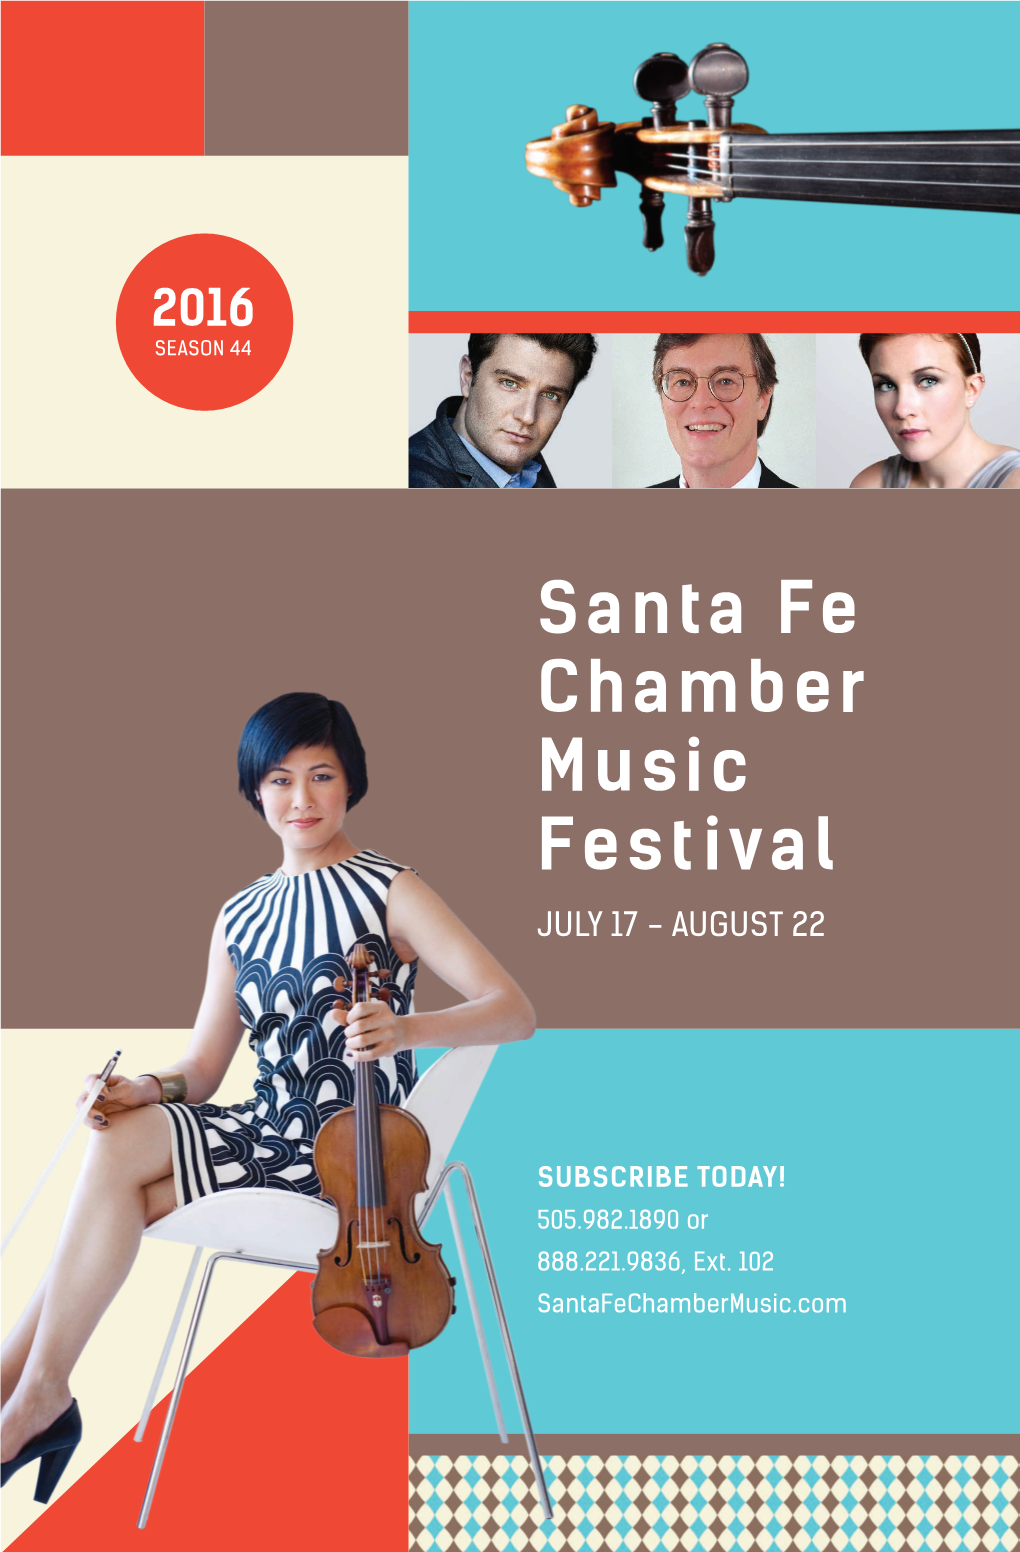 Santa Fe Chamber Music Festival JULY 17 - AUGUST 22